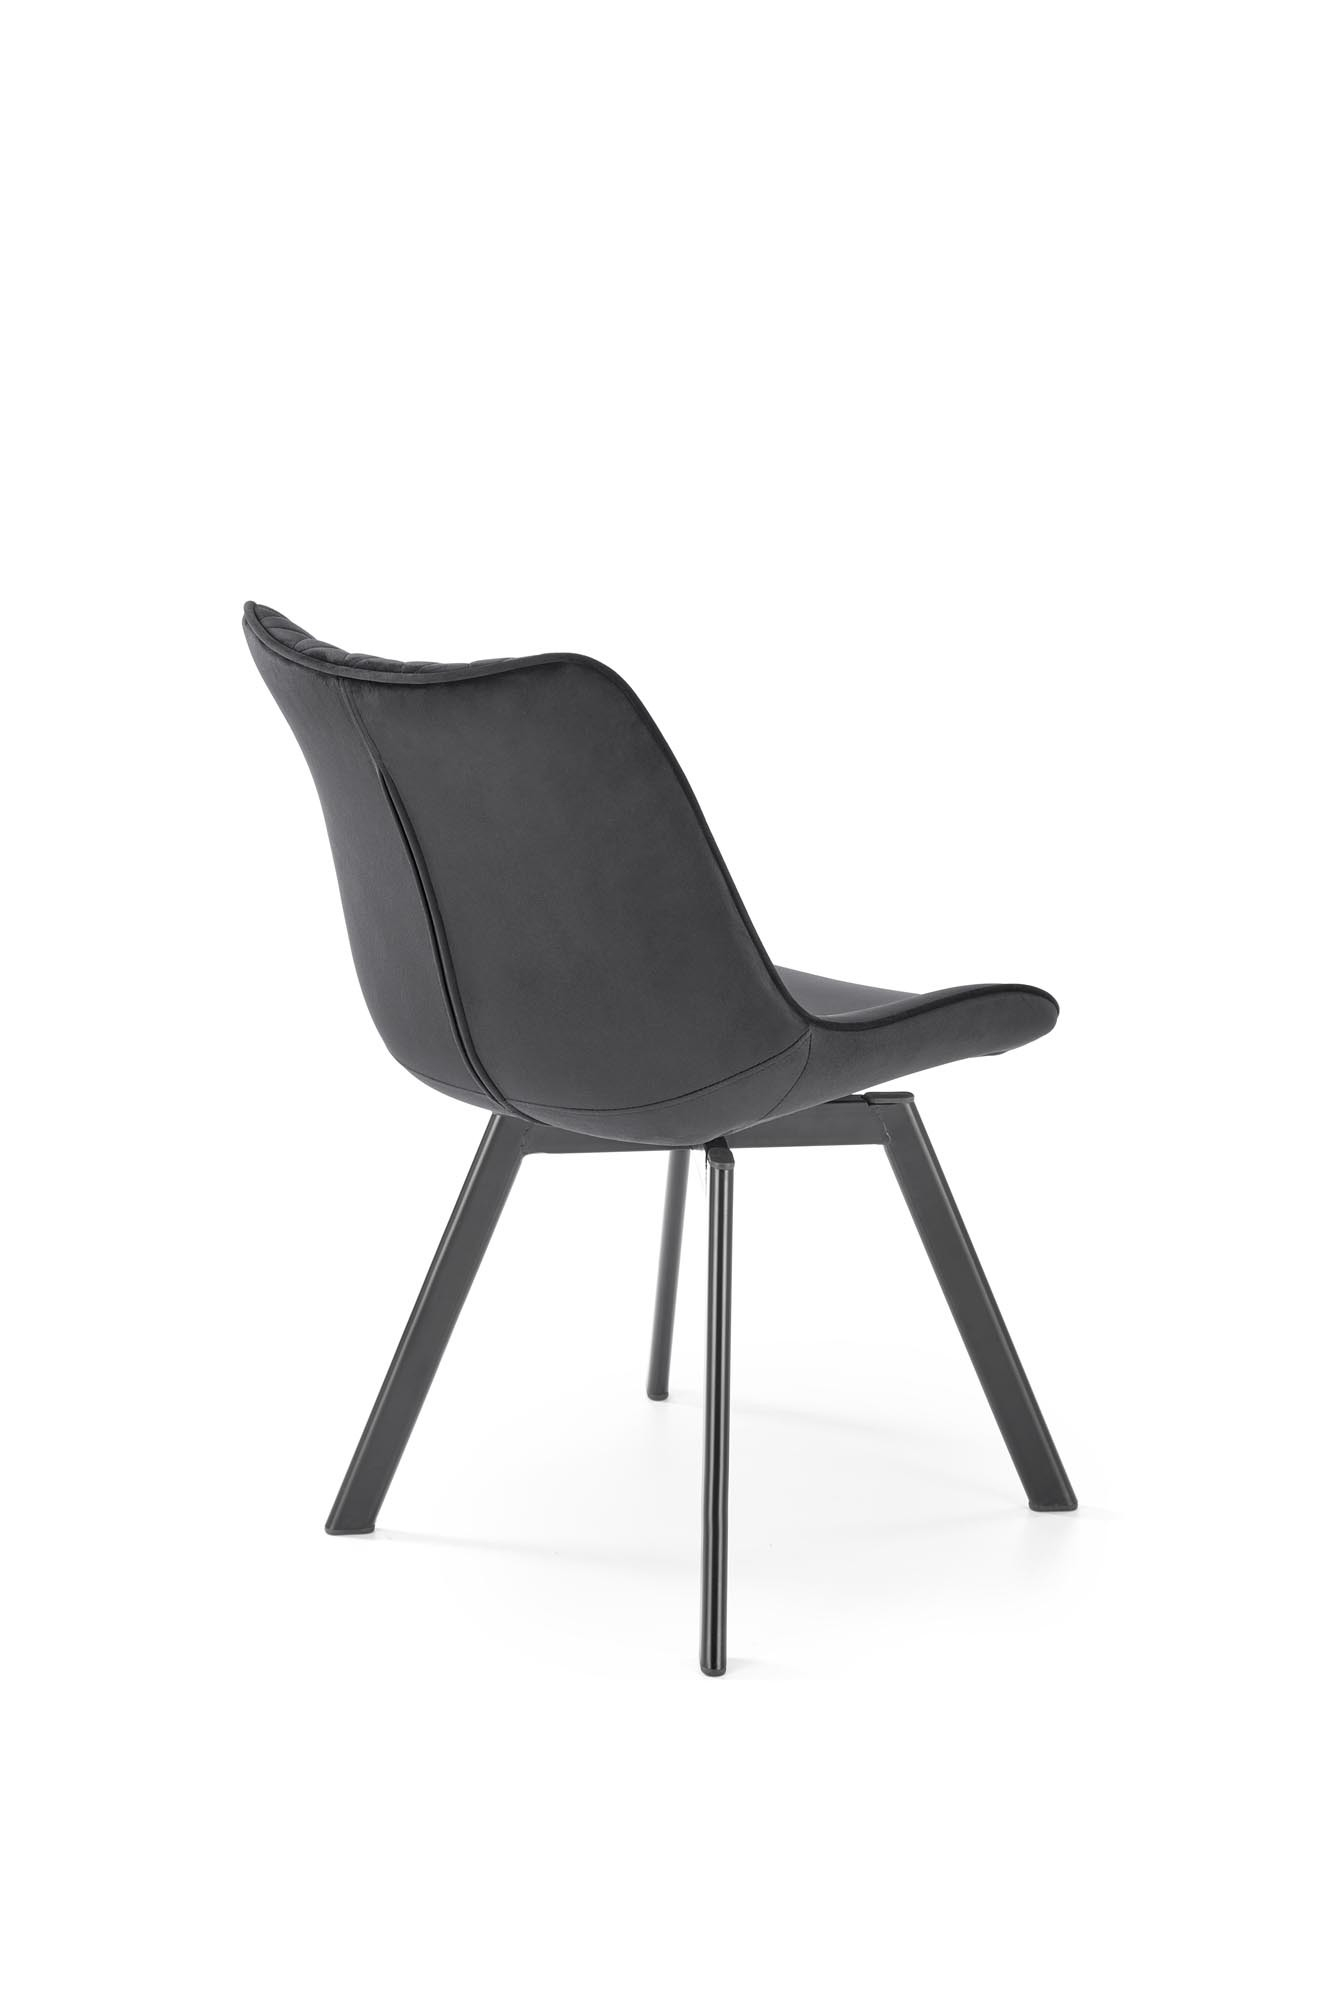 Krzesło z funkcją obrotu K520 krzesło nogi - czarne, siedzisko - czarny